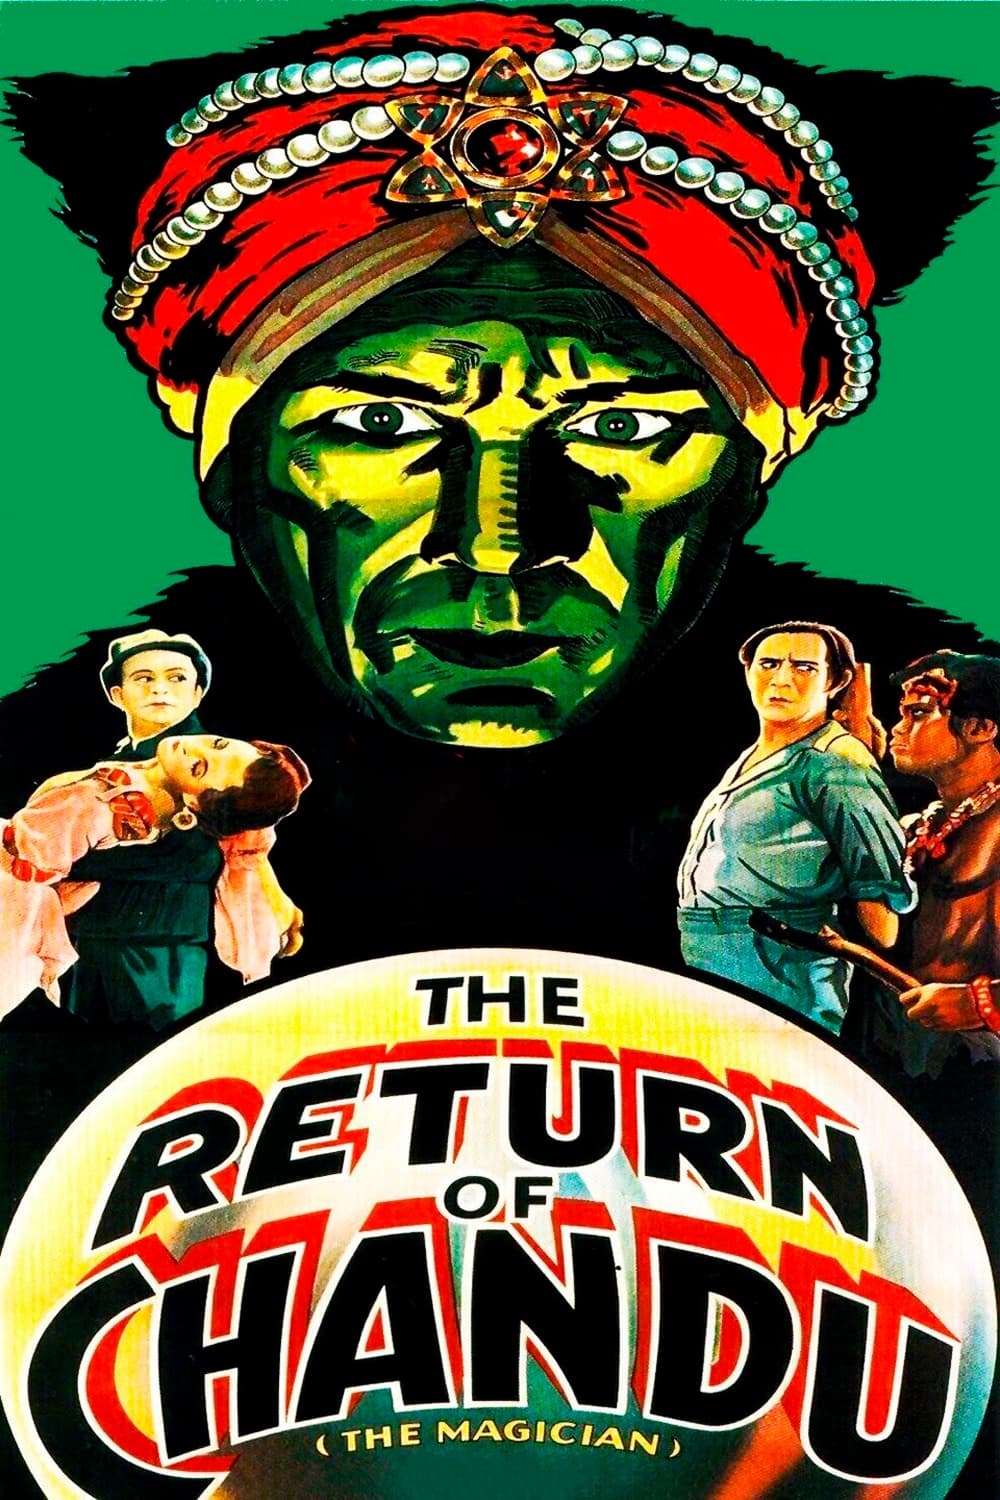 The Return of Chandu (1934)